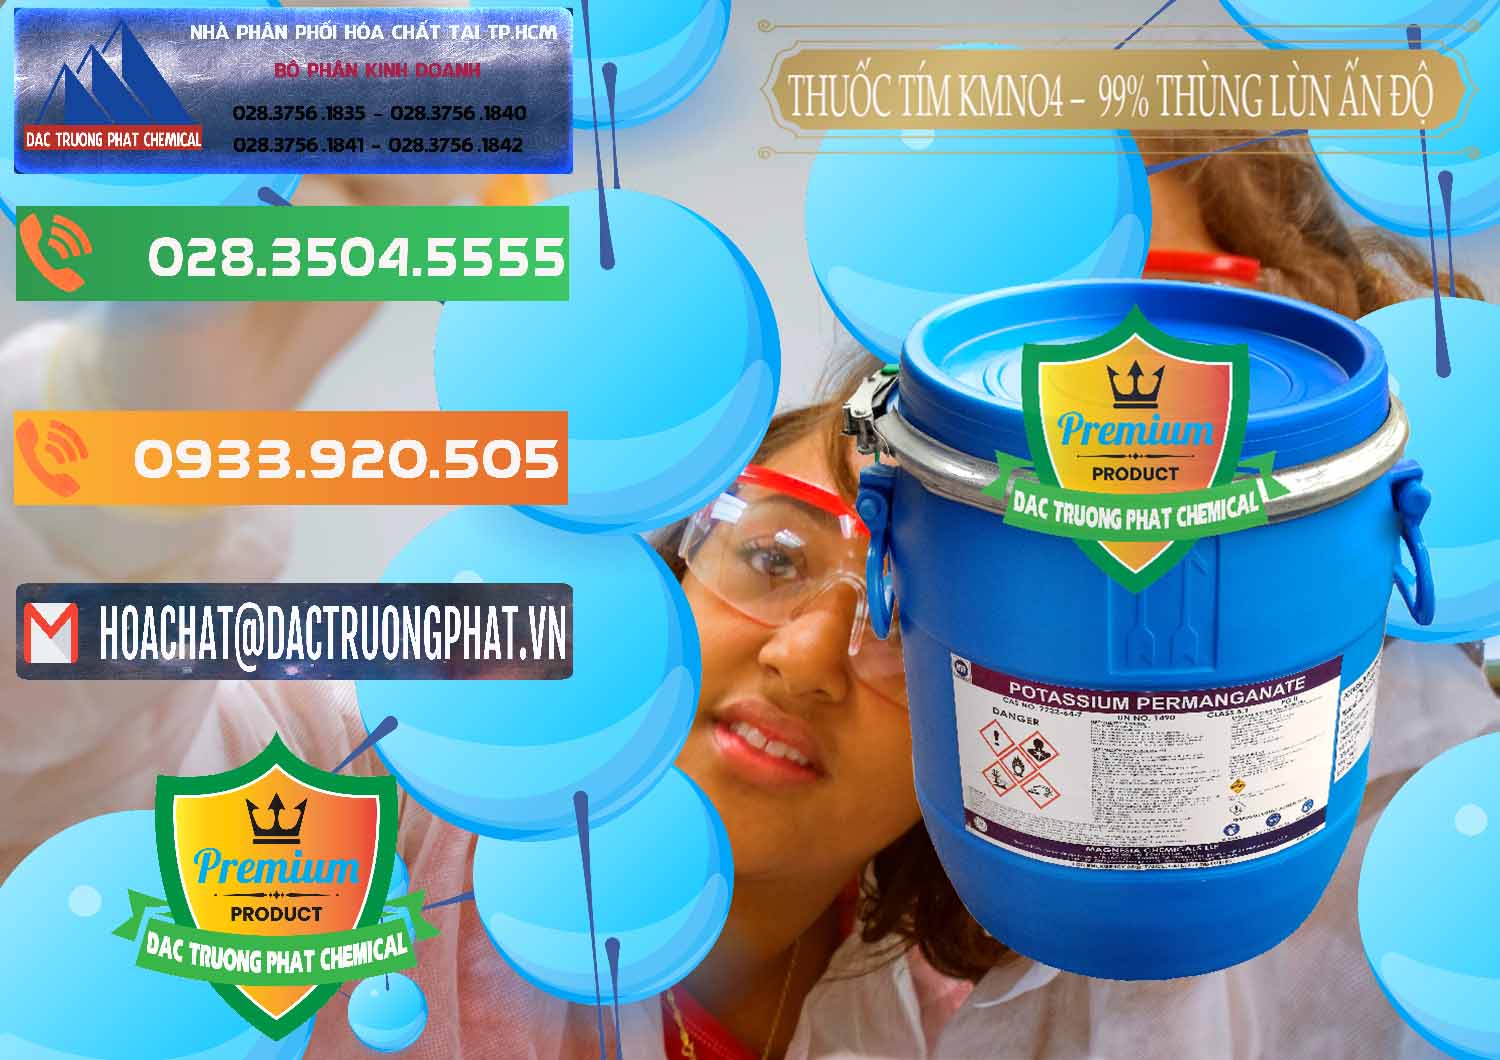 Bán ( cung cấp ) Thuốc Tím - KMNO4 Thùng Lùn 99% Magnesia Chemicals Ấn Độ India - 0165 - Đơn vị cung cấp & phân phối hóa chất tại TP.HCM - hoachatxulynuoc.com.vn